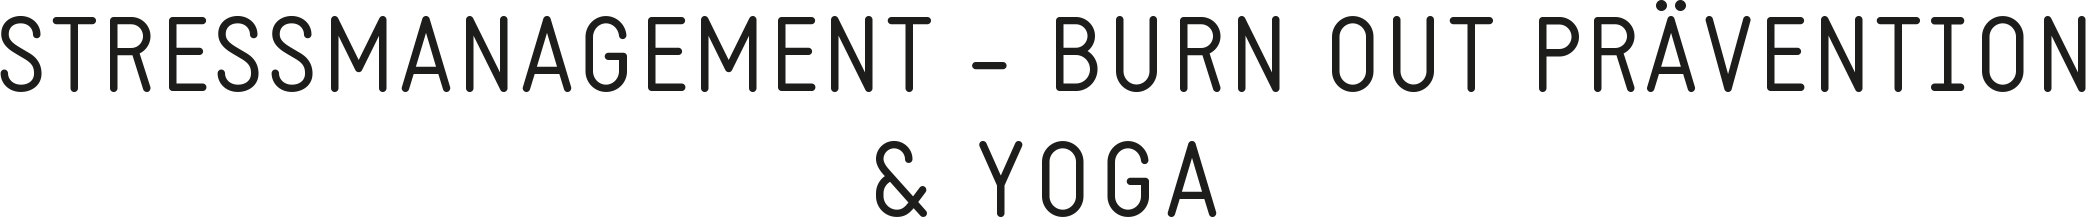 bottom image logo